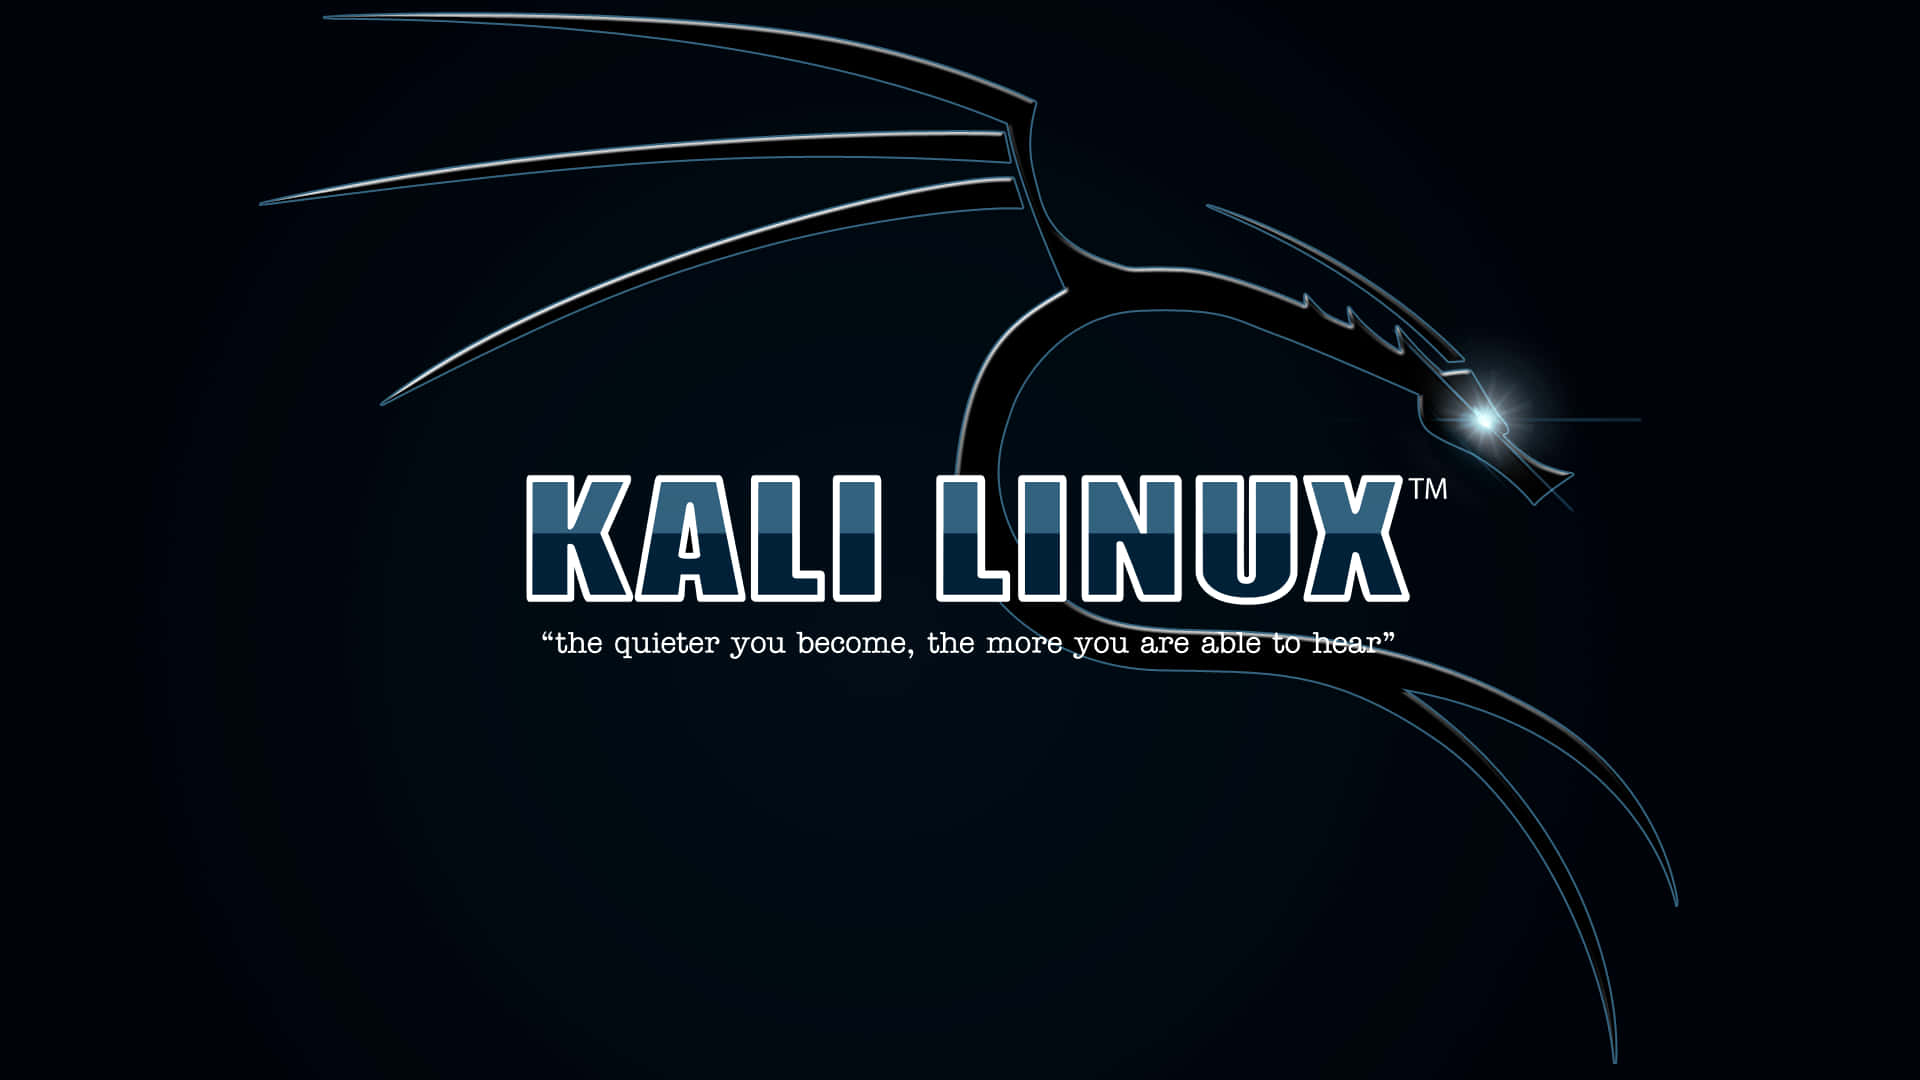 Introduktiontill Världen Av Cybersäkerhet Med Användning Av Kali Linux